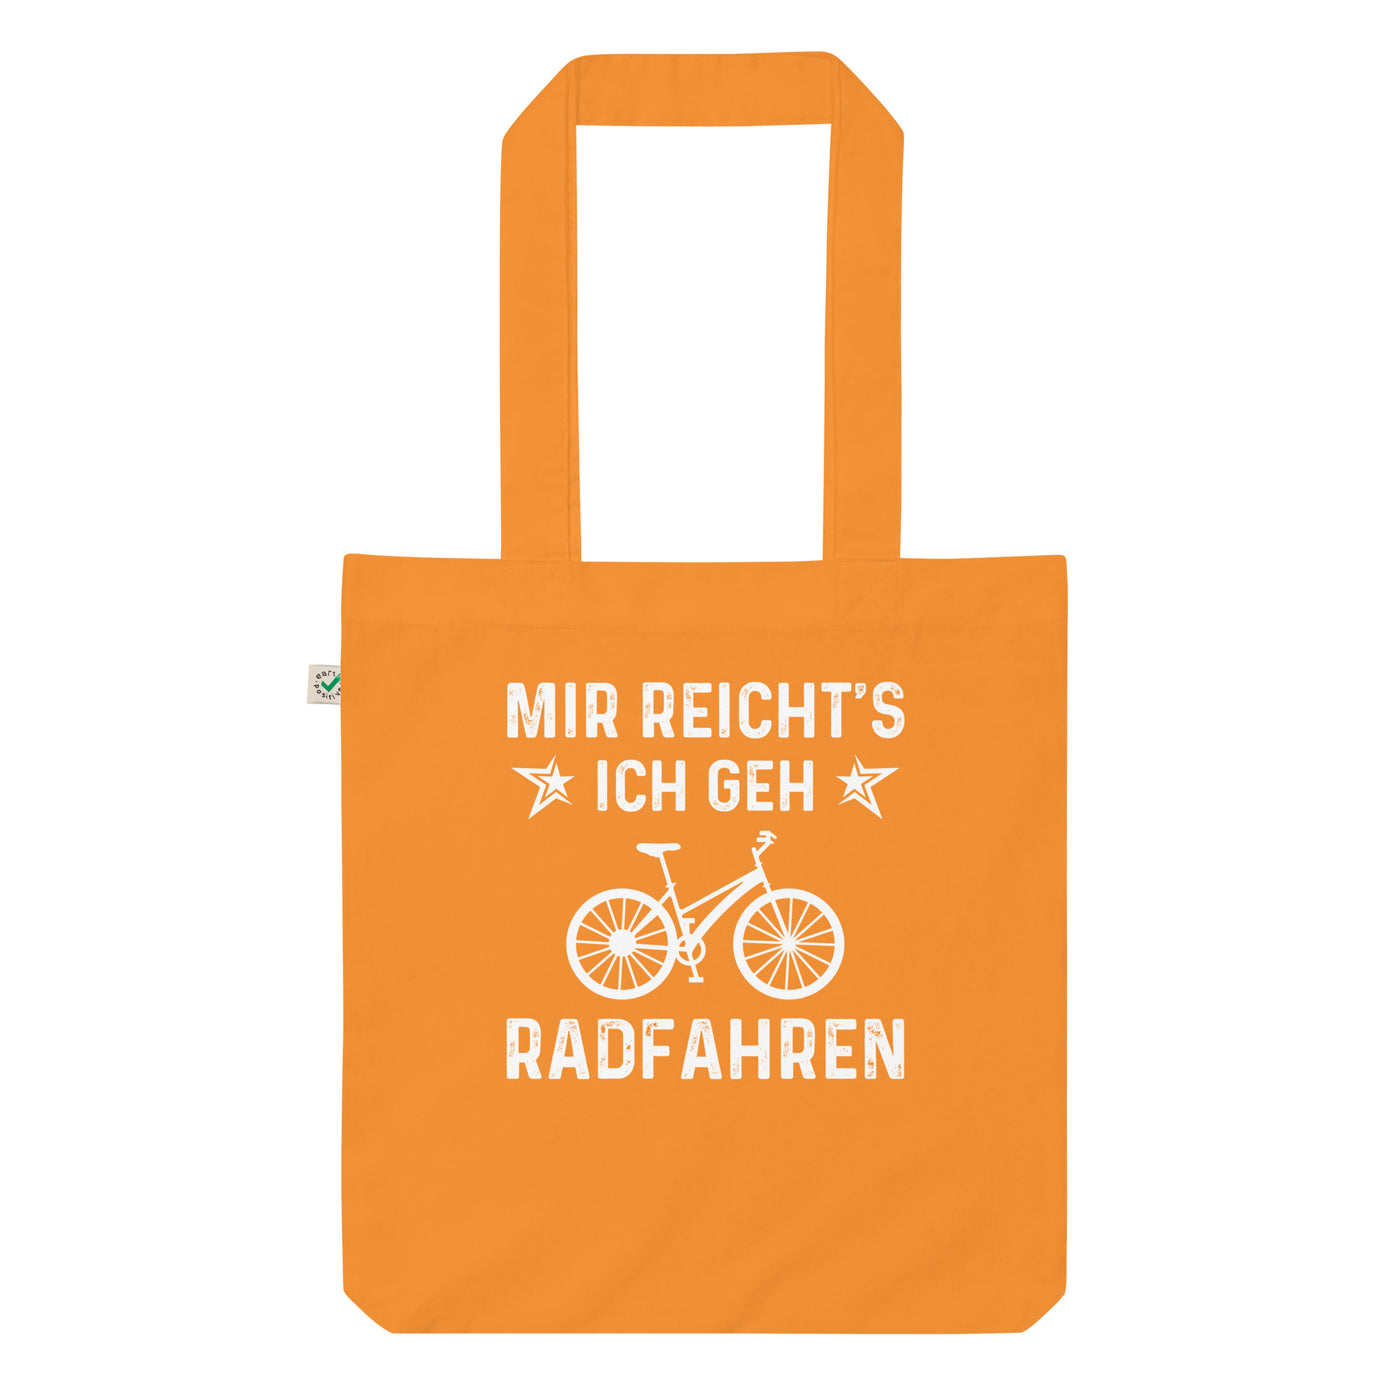 Mir Reicht'S Ich Gen Radfahren - Organic Einkaufstasche fahrrad Cinnamon